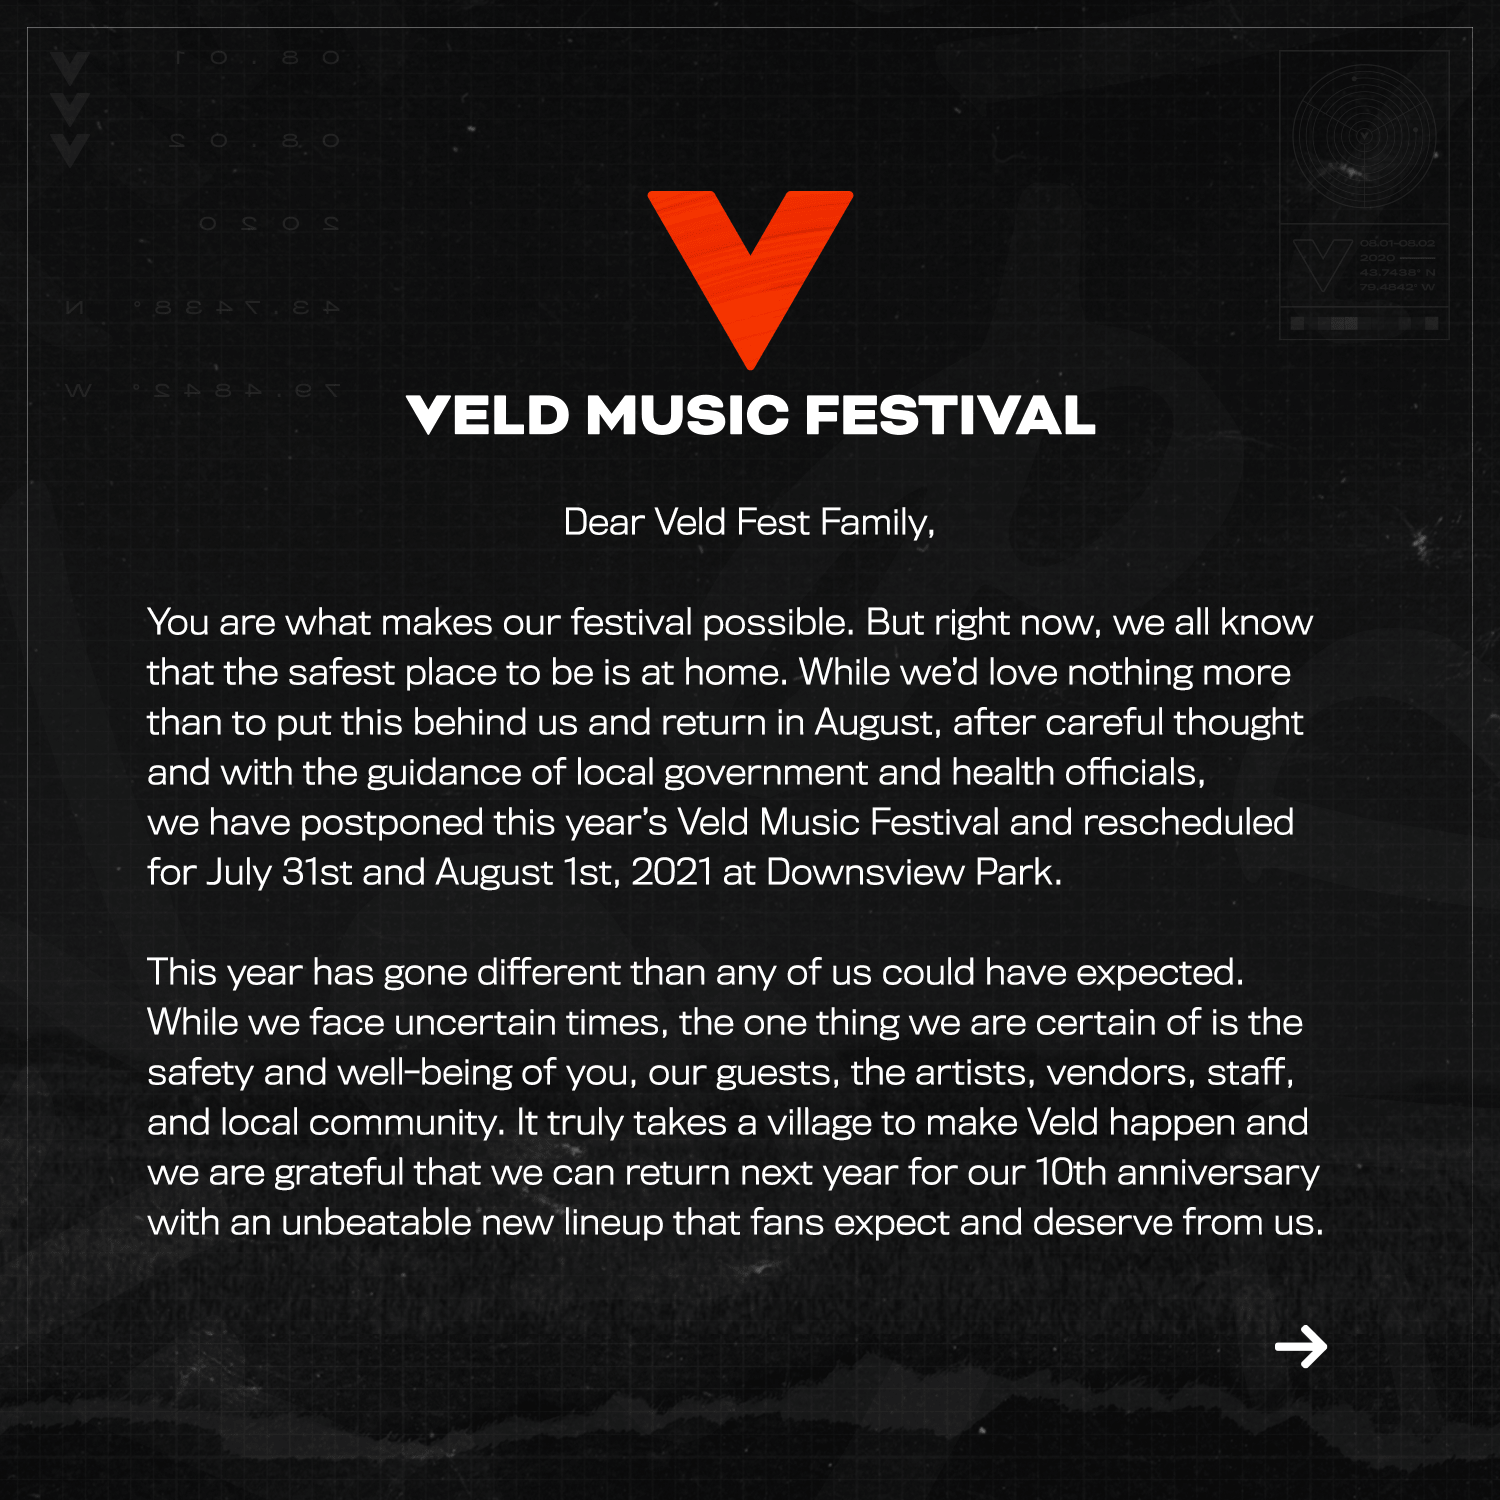 Veld music festival 2020 